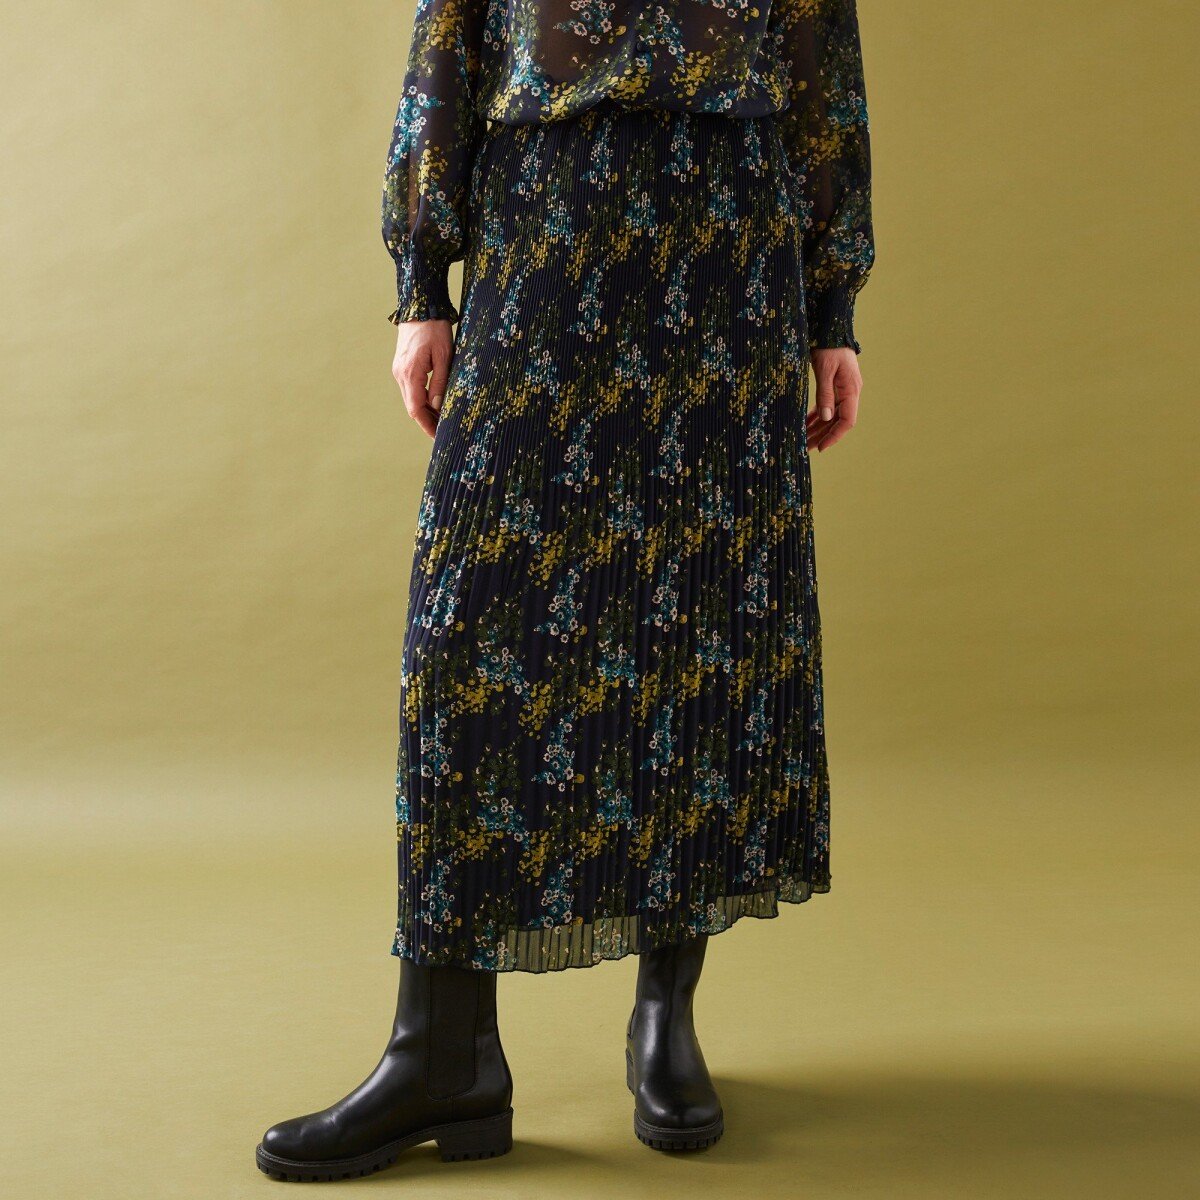 Blancheporte Plisovaná sukně s potiskem květin z recyklovaného polyesteru (1), pro vysokou po nám.modrákhaki 36